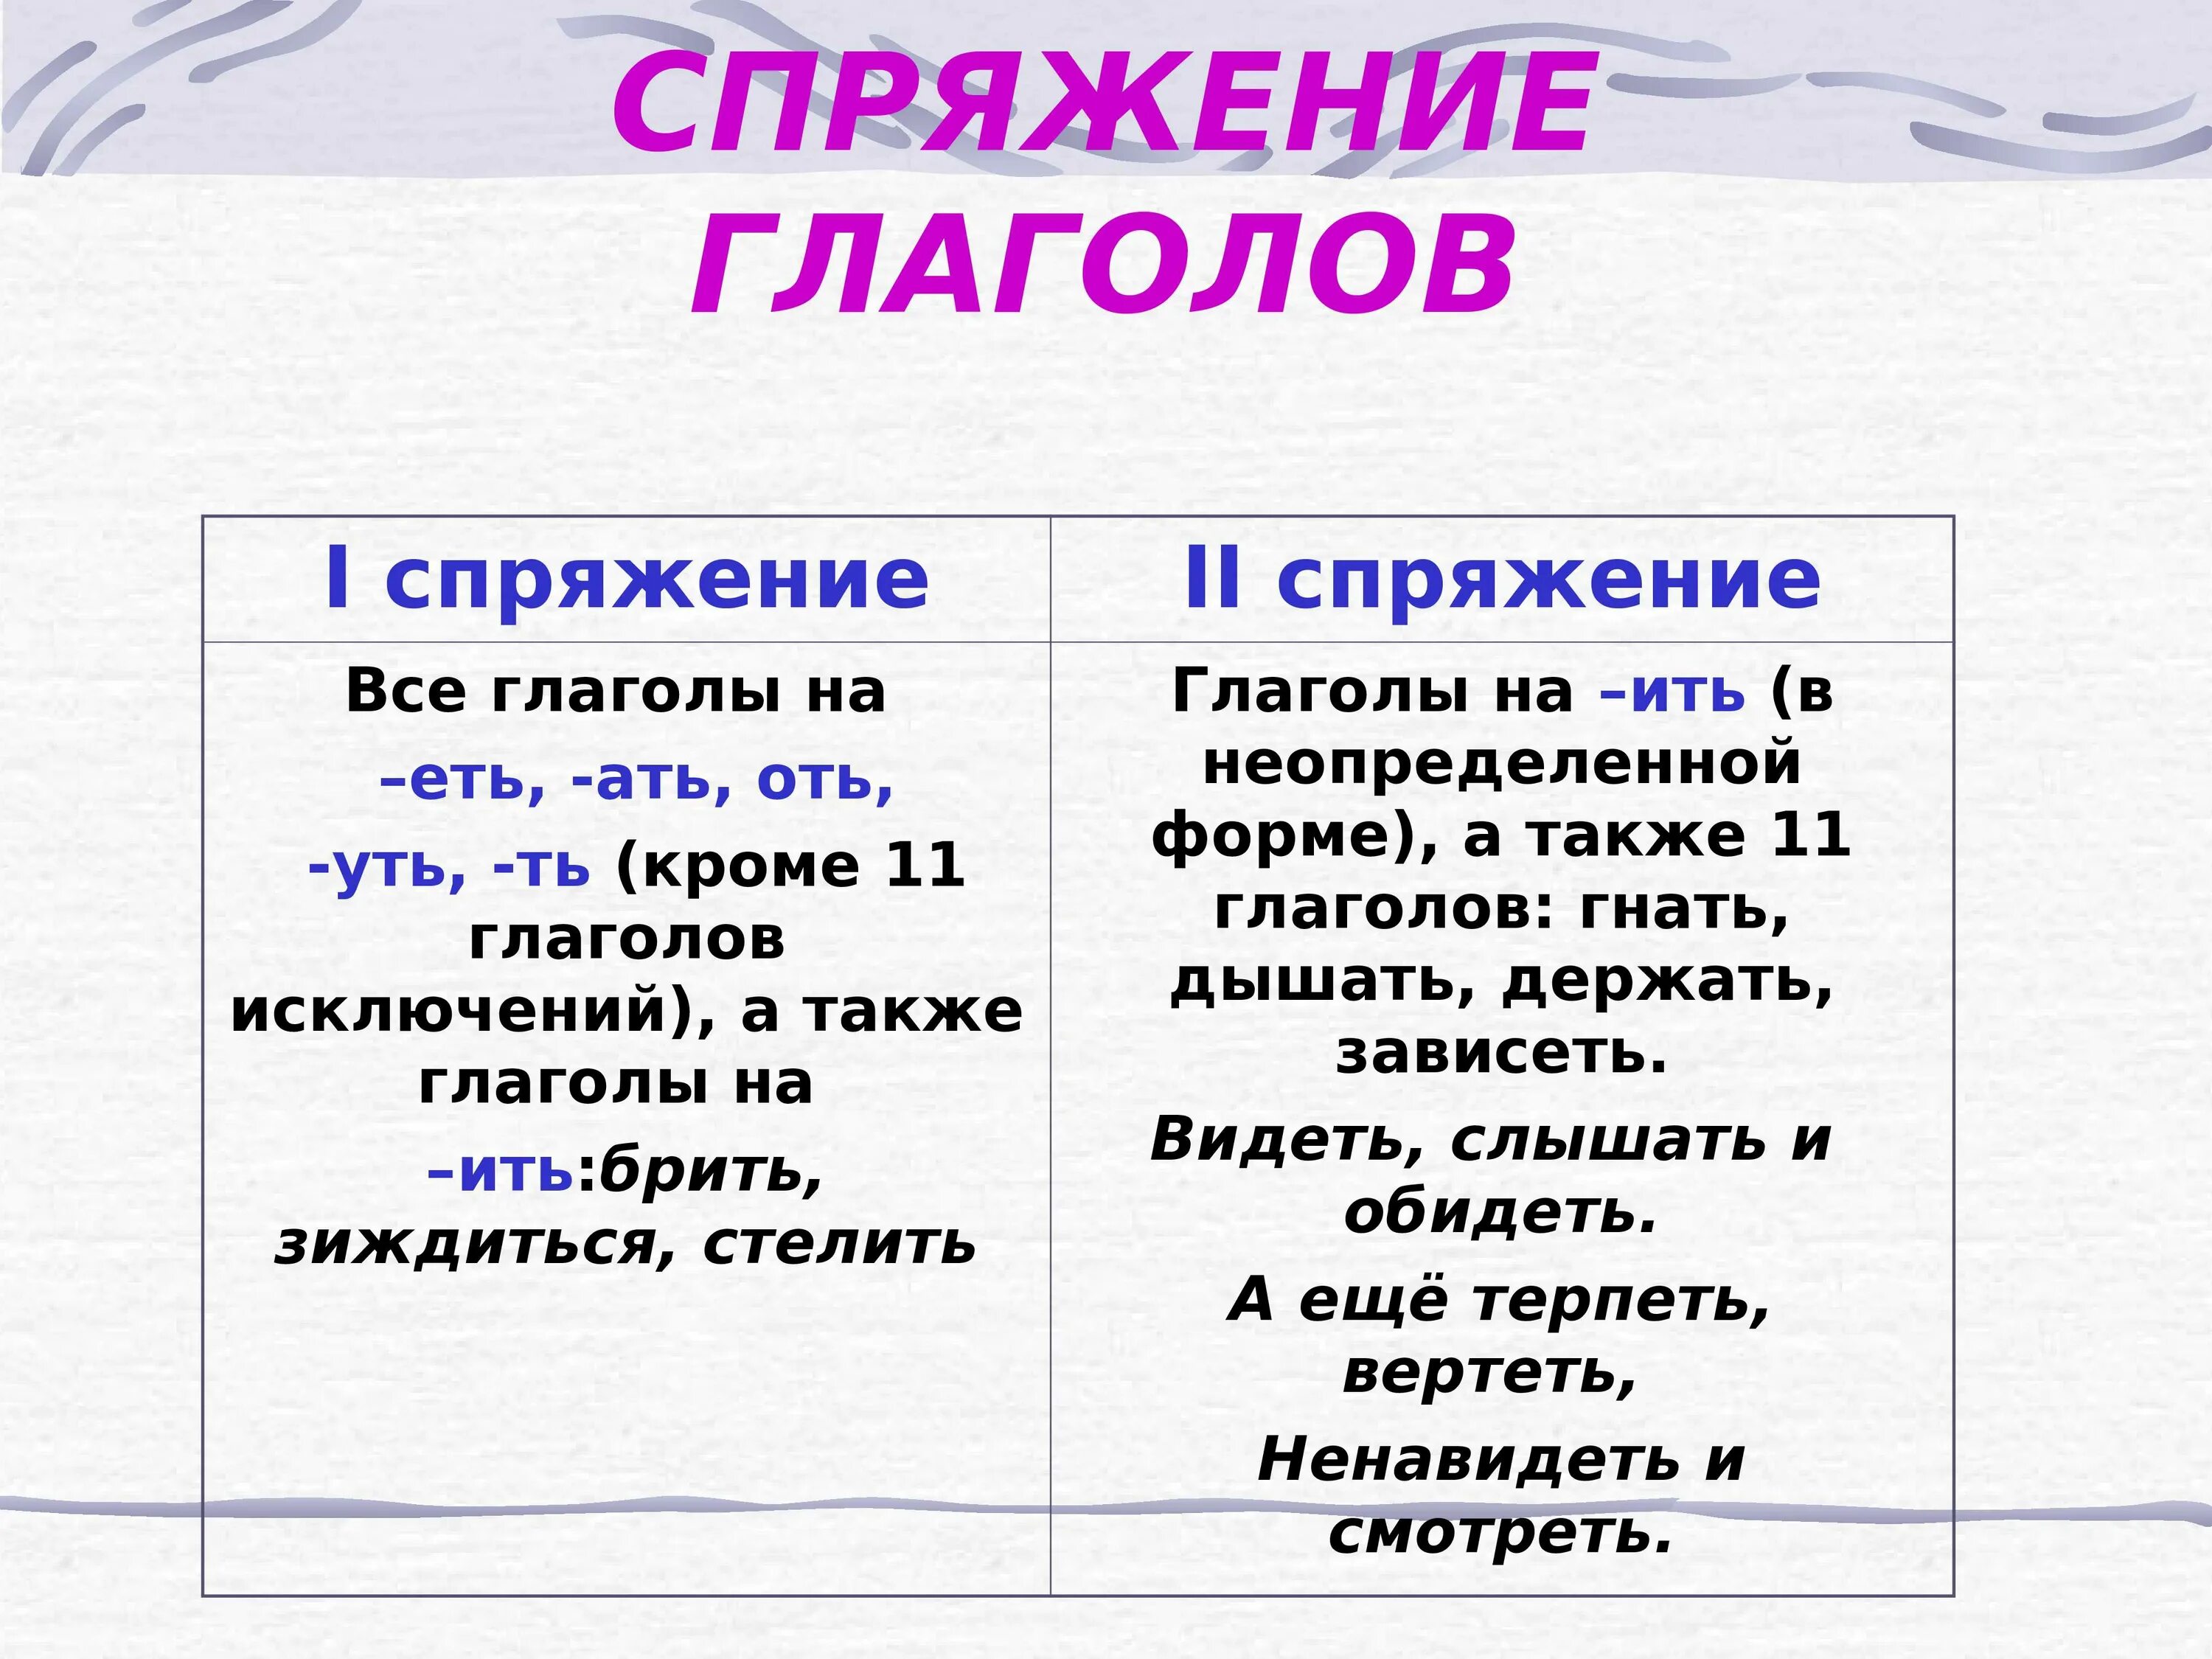 Как понять спряжение глаголов в русском языке 4 класс таблица. Как понять спряжение глаголов 6 класс. Спряжение глаголов правило таблица. Как понять спряжение глаголов в русском языке 4 класс.